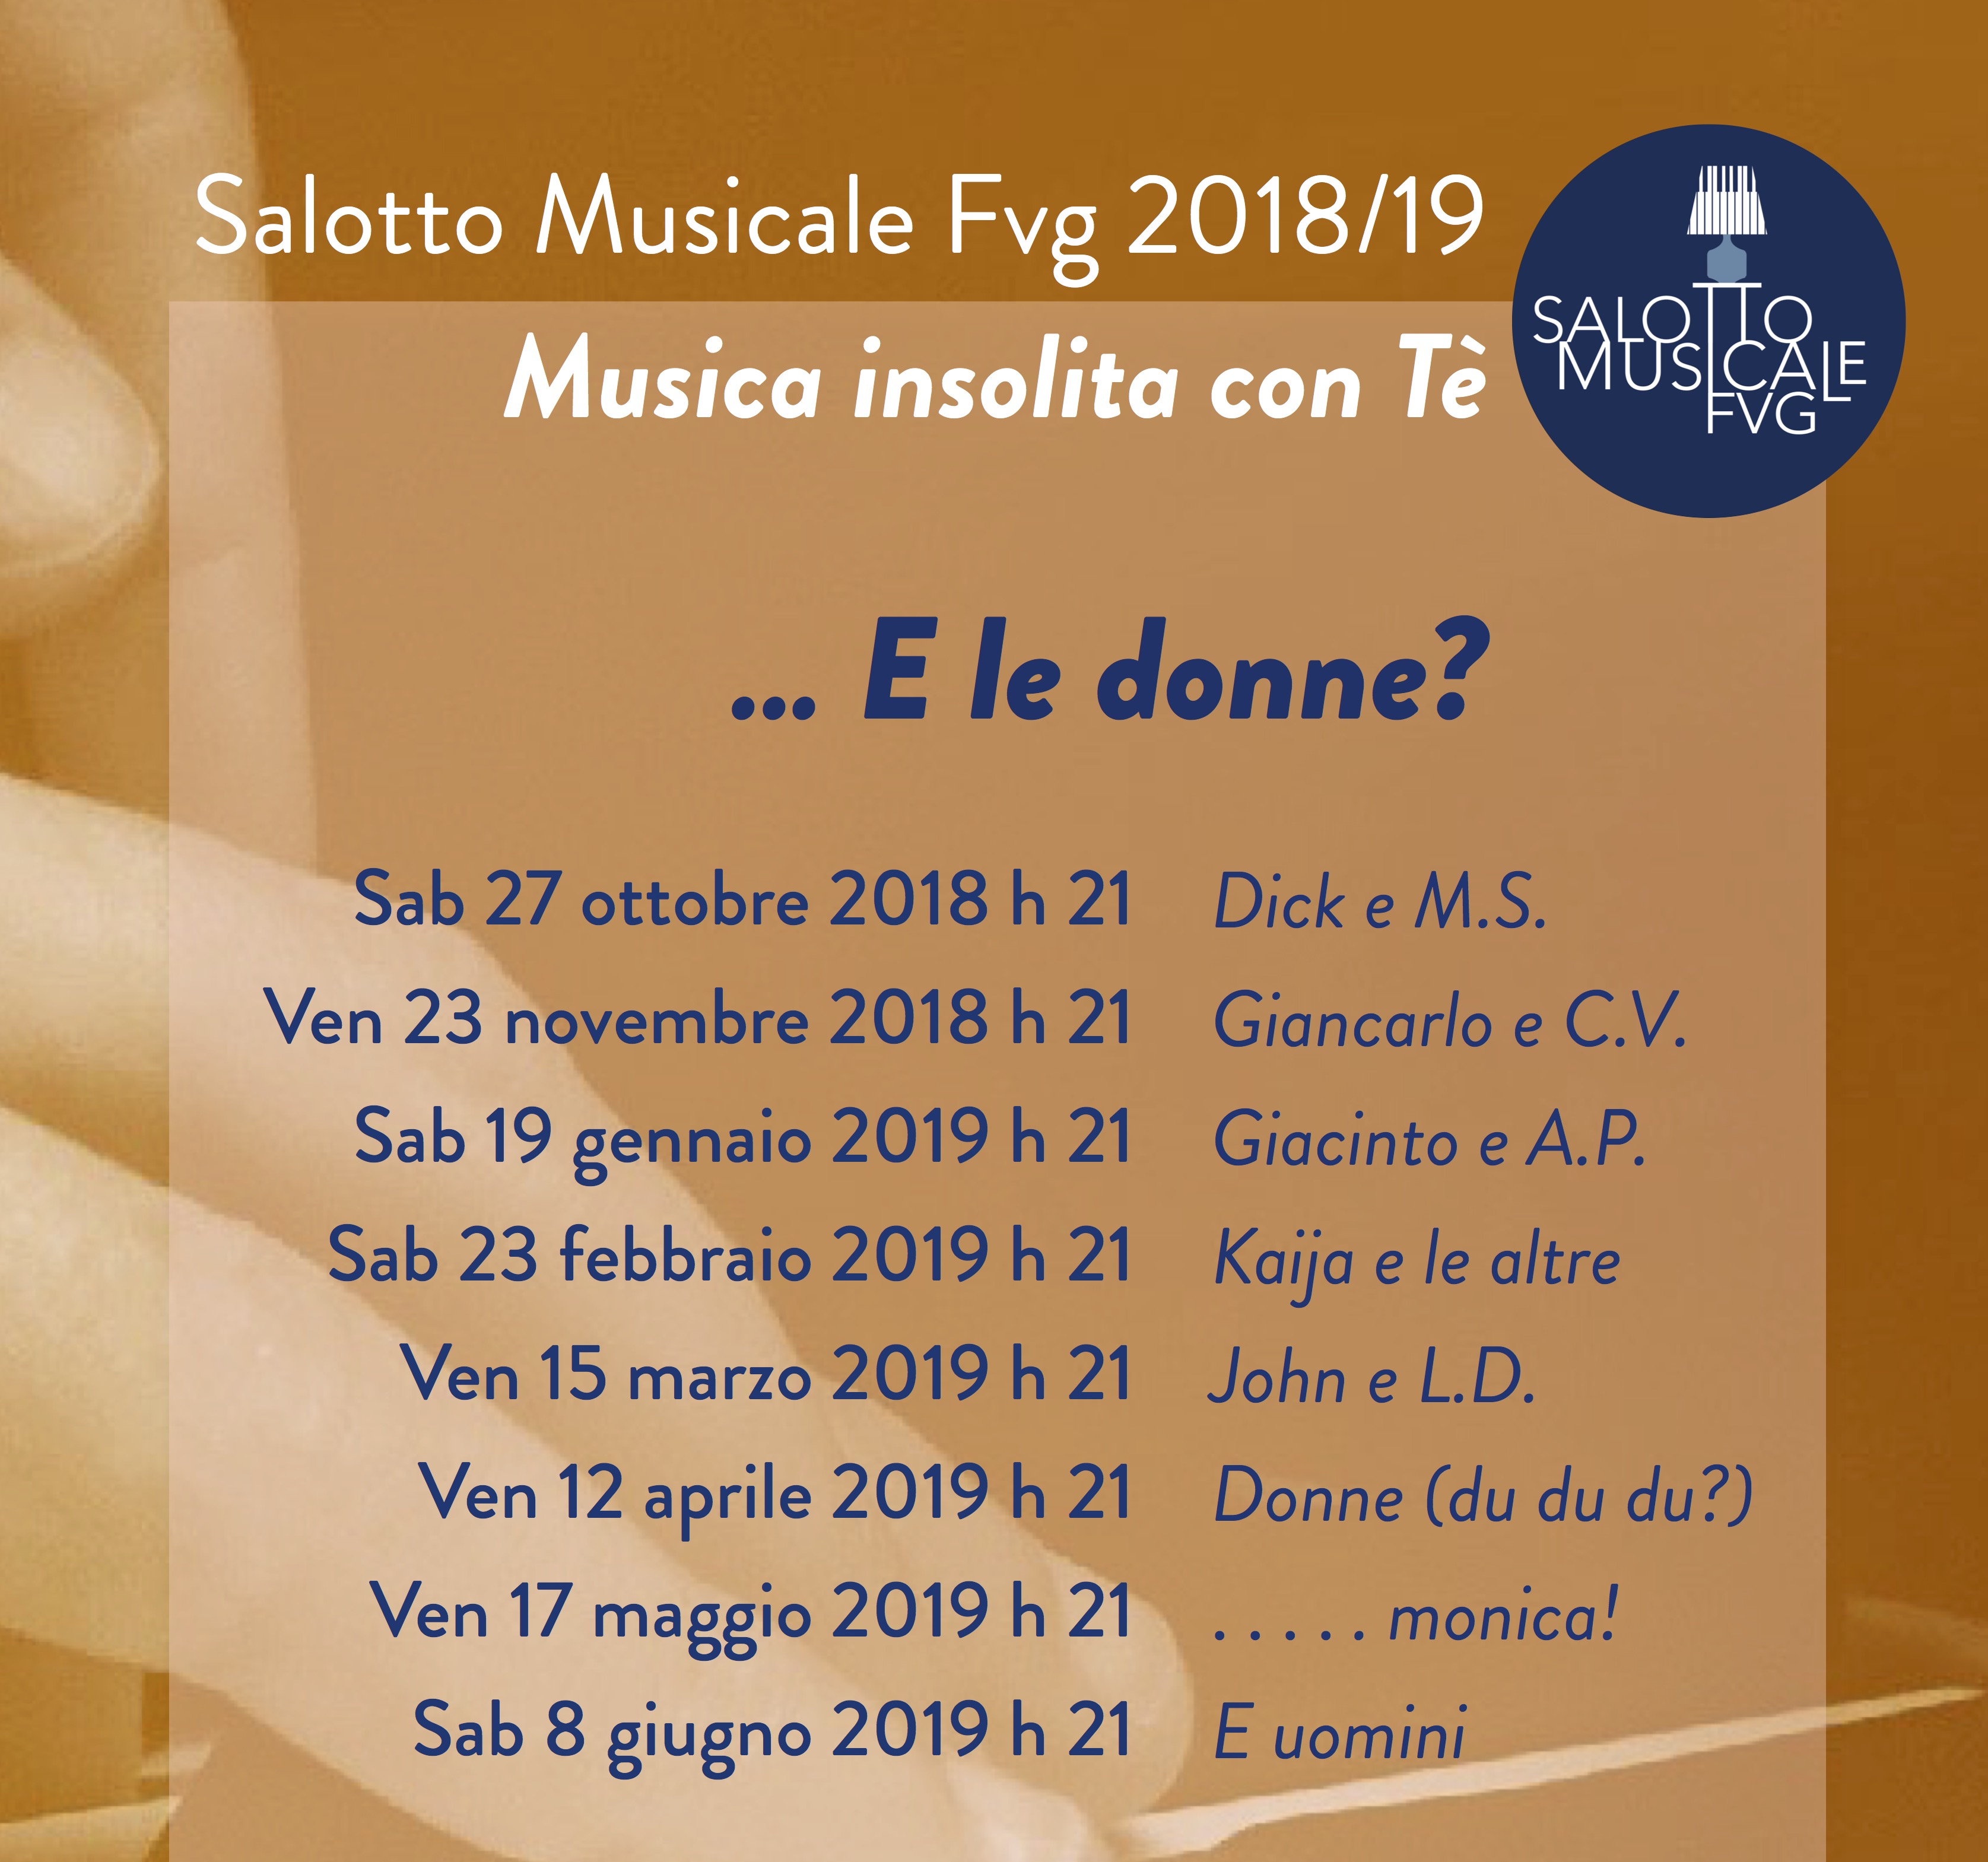 Salotto Musicale FVG 2018/19